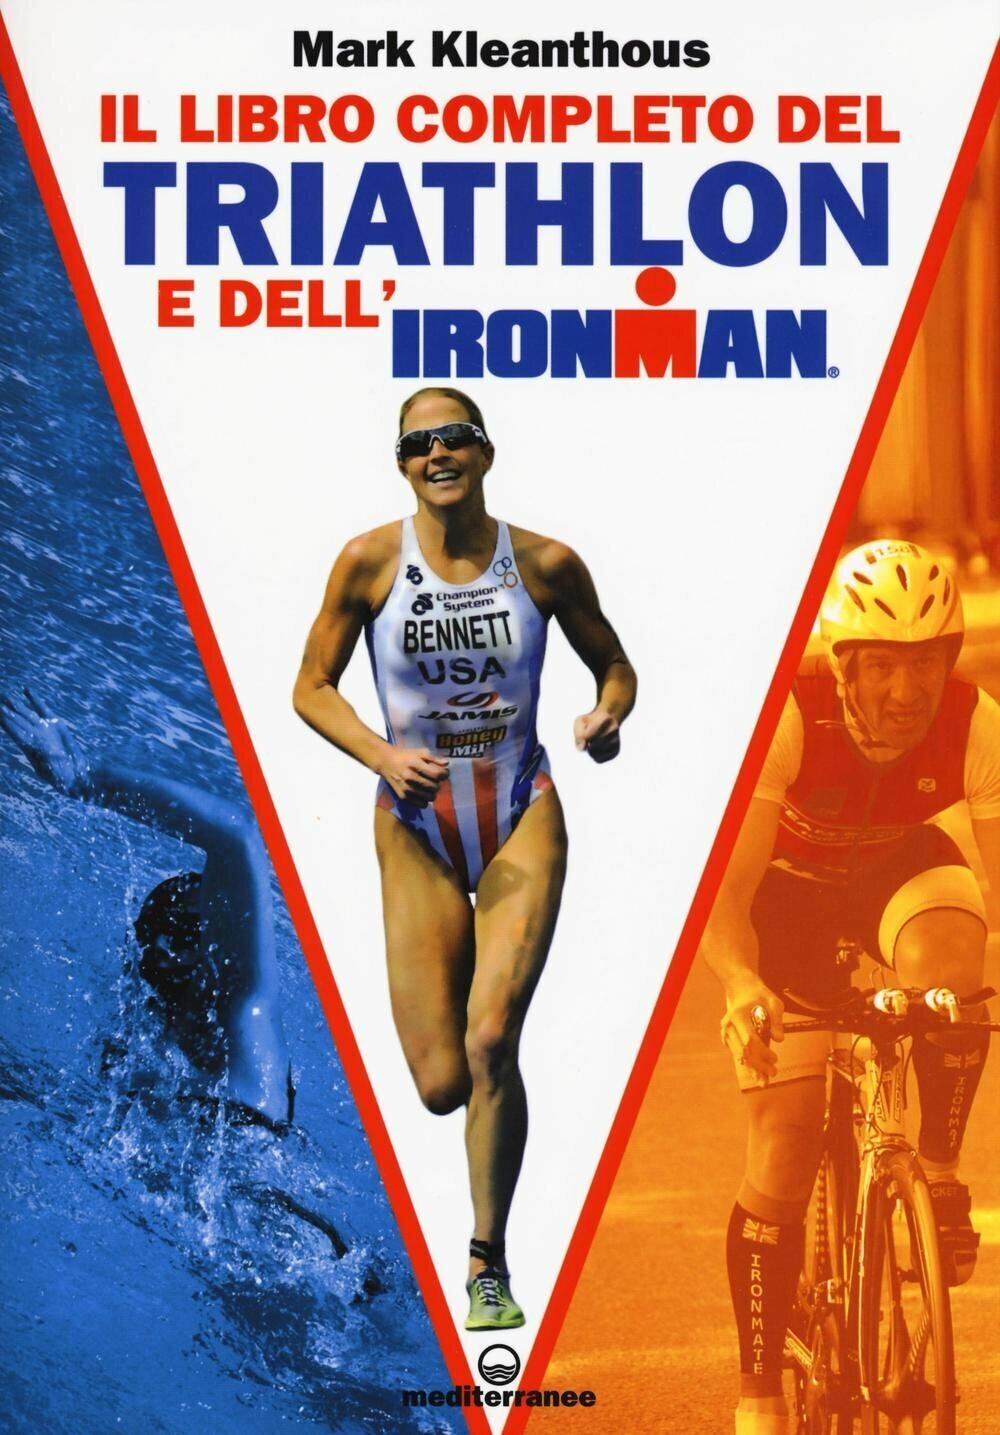 Il libro completo del triathlon e dell'ironman - Mark Kleanthous - Mediterranee libro usato